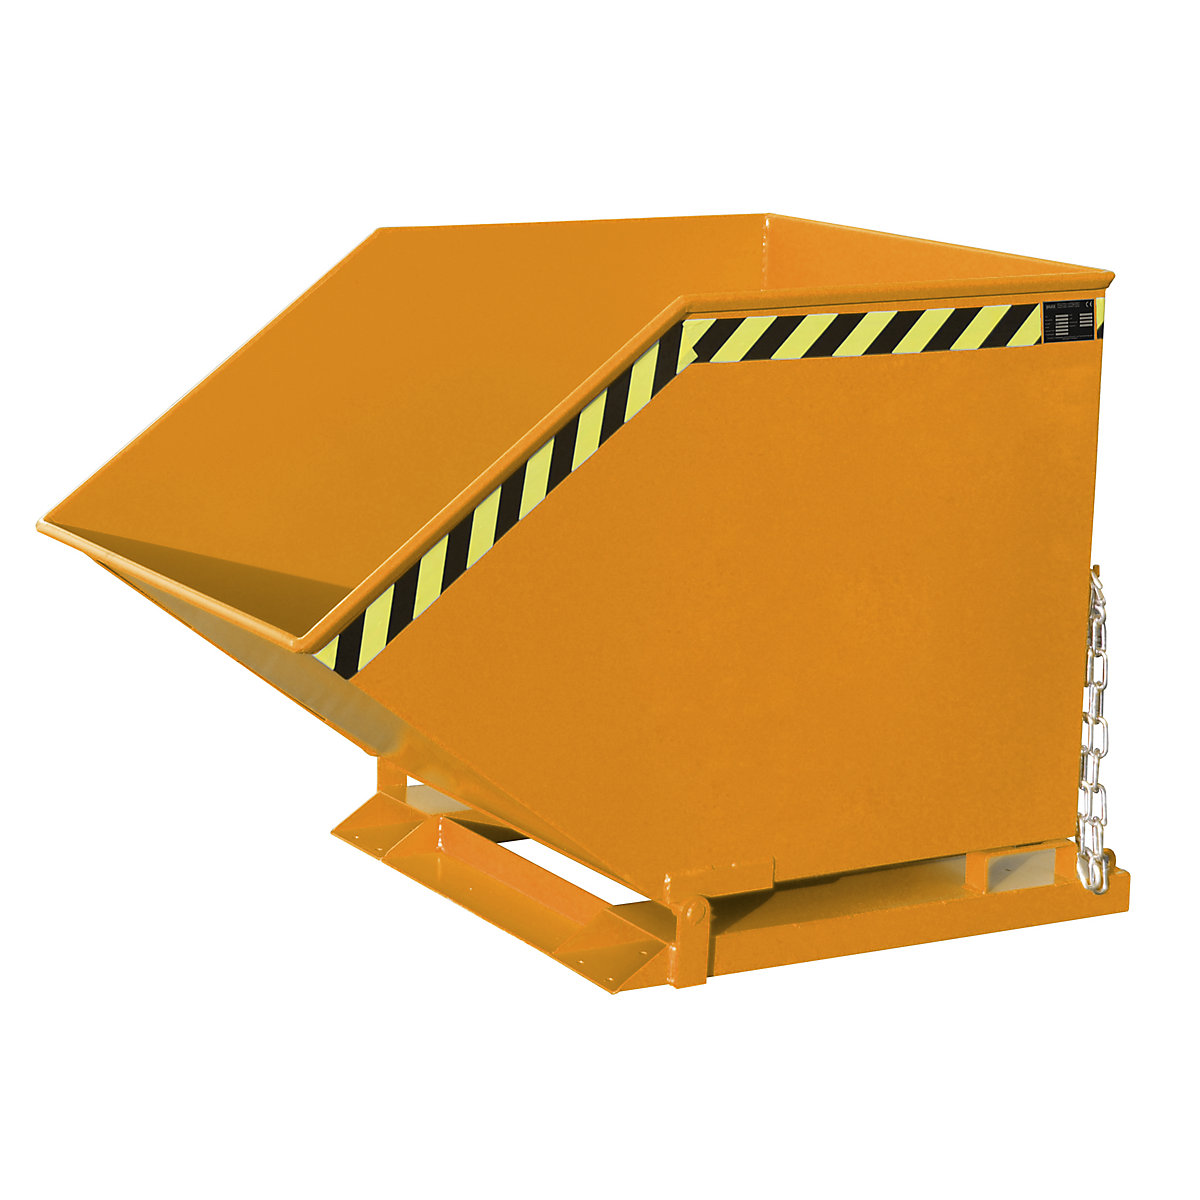 Cavidade de basculação com mecanismo basculante – eurokraft pro, forma de caixa, volume 0,8 m³, laranja RAL 2000-9